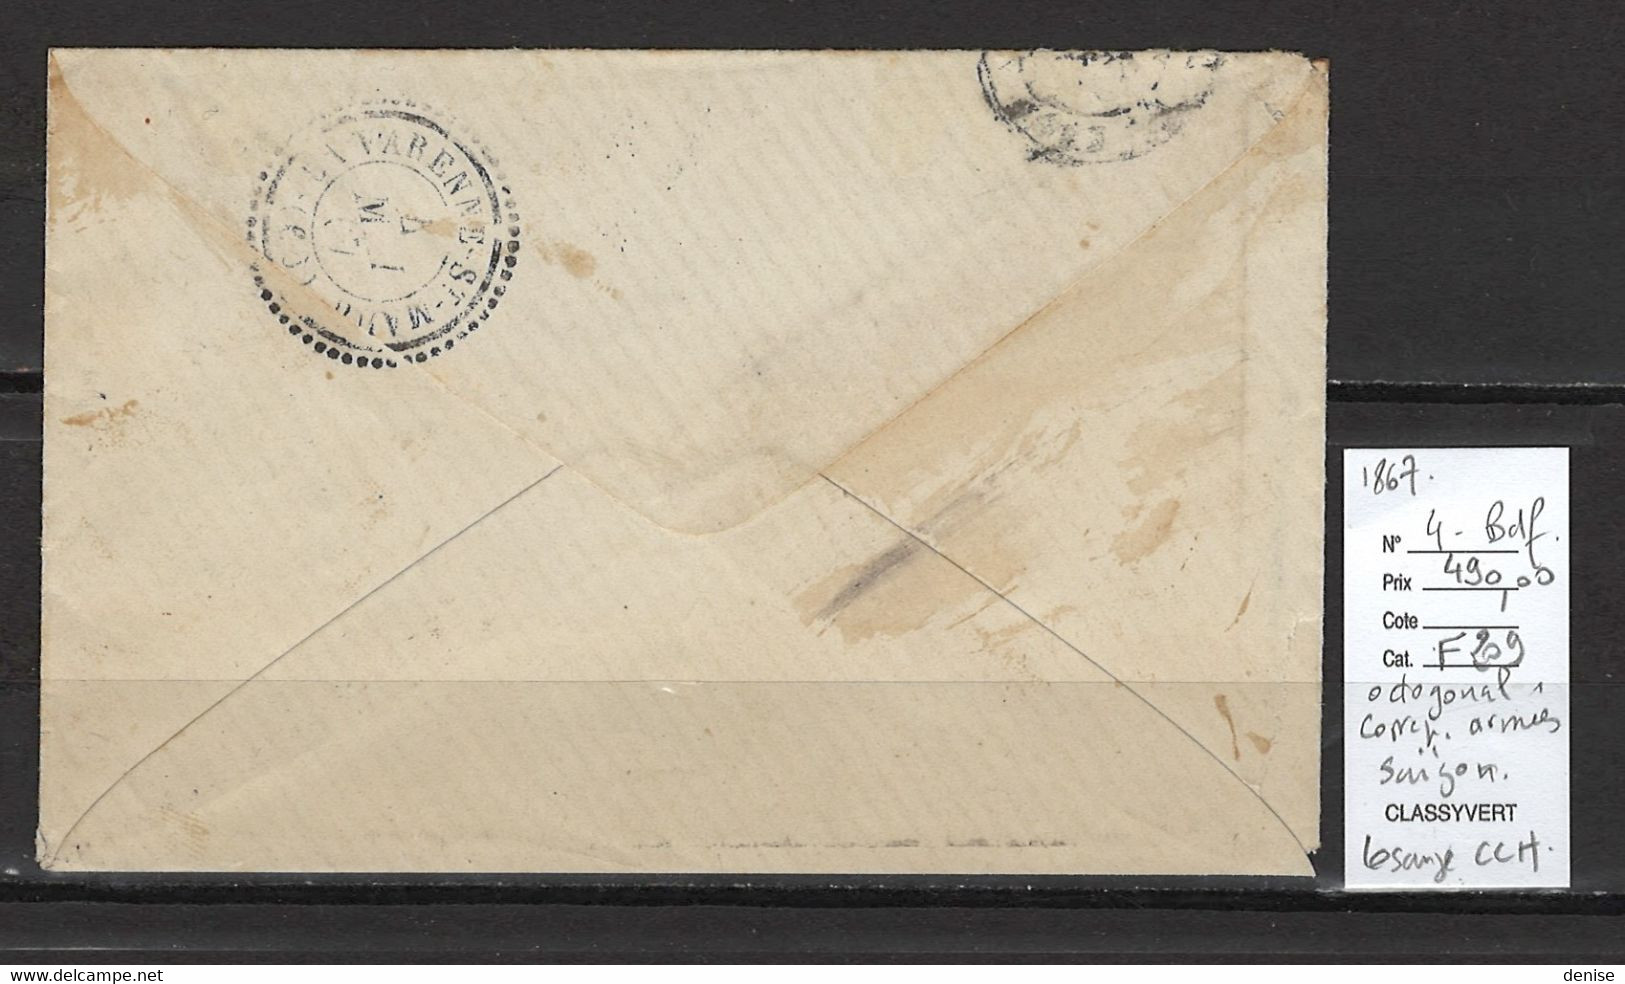 Cochinchine - Saigon - Yvert 4 Bord De Feuille - Losange CCH - Correspondance D'Armées - 1867 - Eagle And Crown